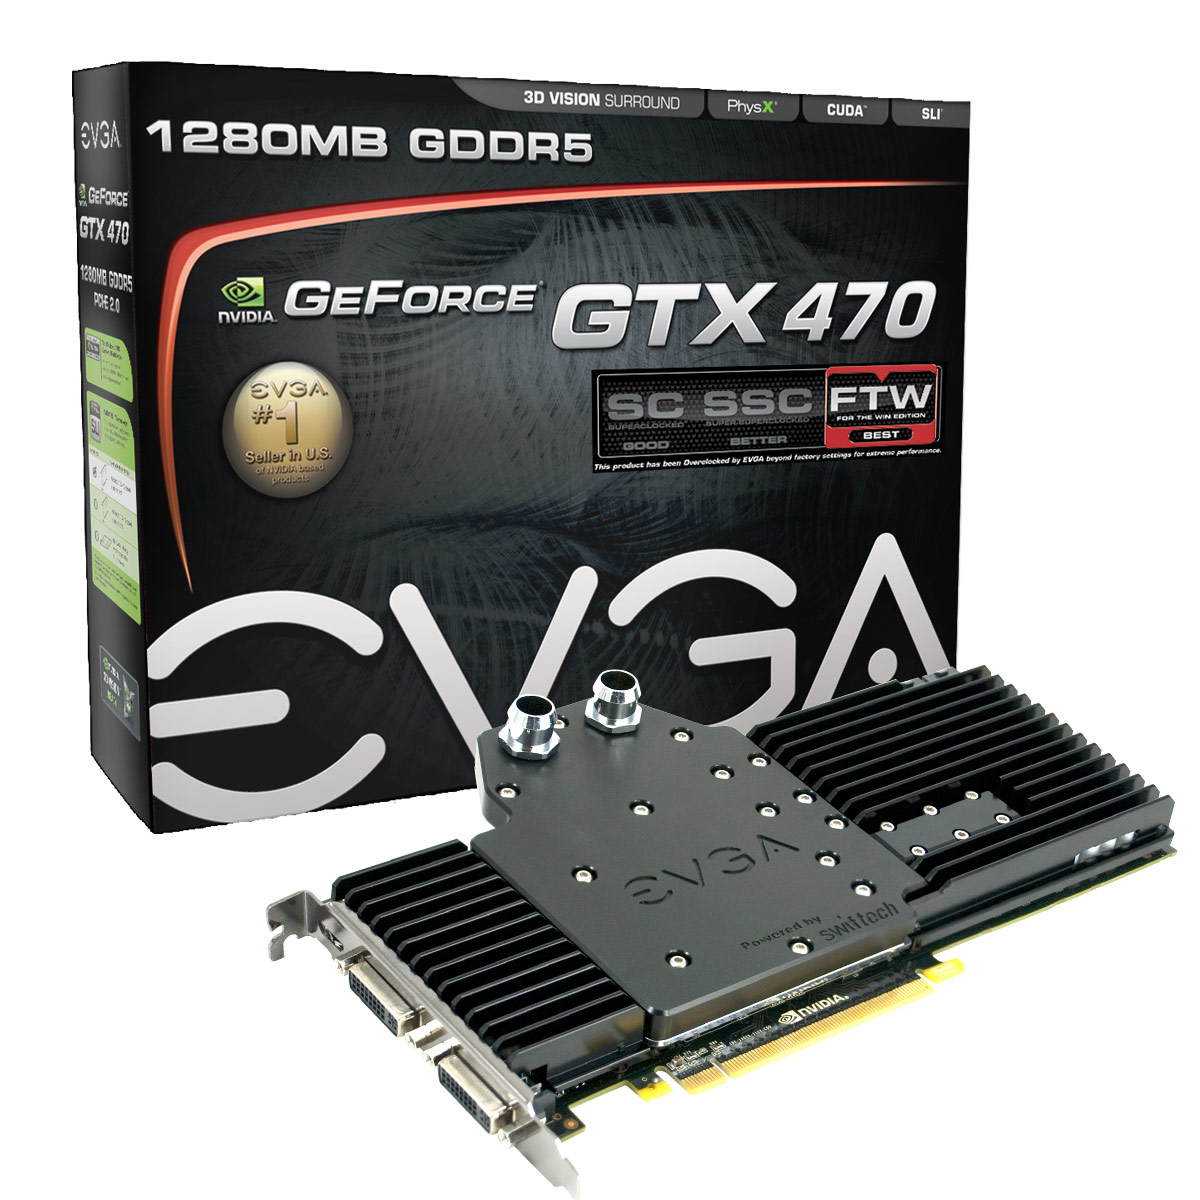 Immagine pubblicata in relazione al seguente contenuto: E' prenotabile la GeForce GTX 470 Hydro Copper FTW di EVGA | Nome immagine: news12989_1.jpg